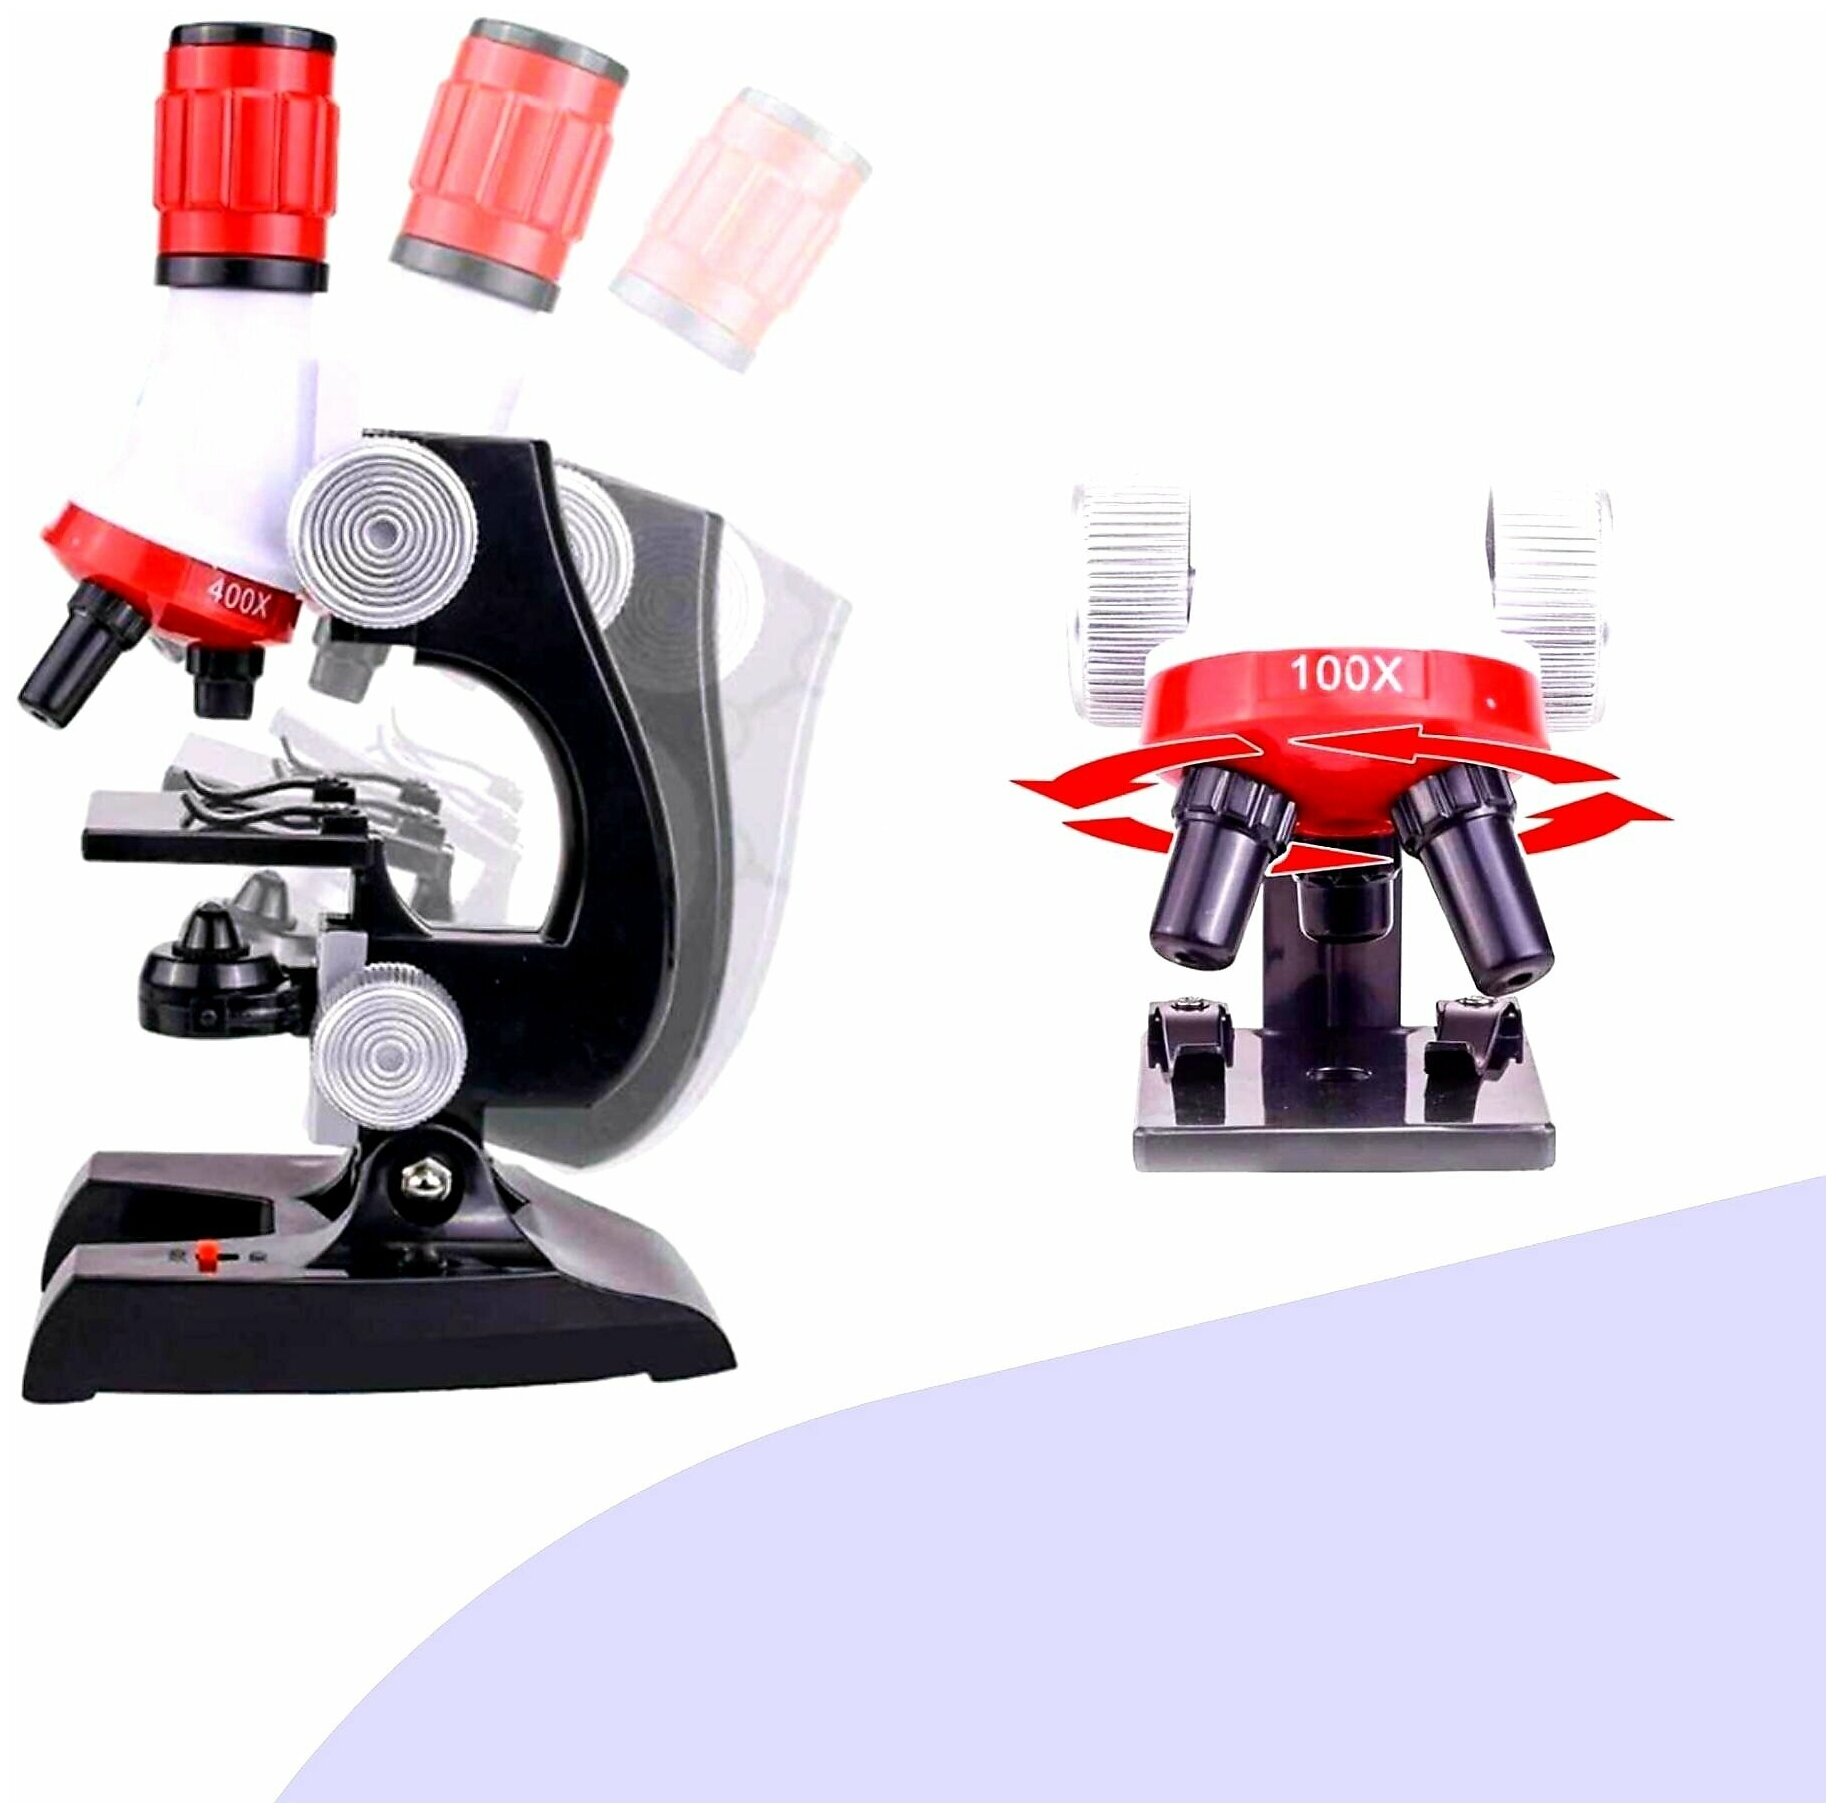 Микроскоп для детей с держателем для телефона для микросъемки увеличение X100 Х400 X1200/ Микроскоп детский/ Набор для исследований/ Увеличитель